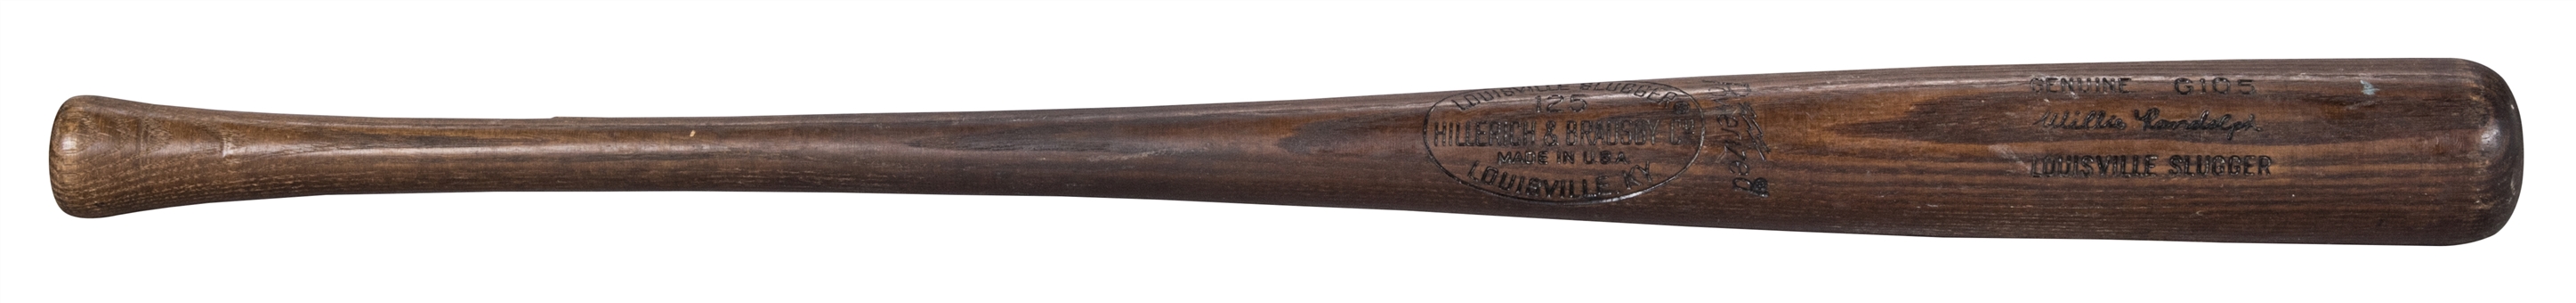 1977-79 Willie Randolph Game Used Hillerich & Bradsby G105 Model Bat (PSA/DNA GU 8.5)